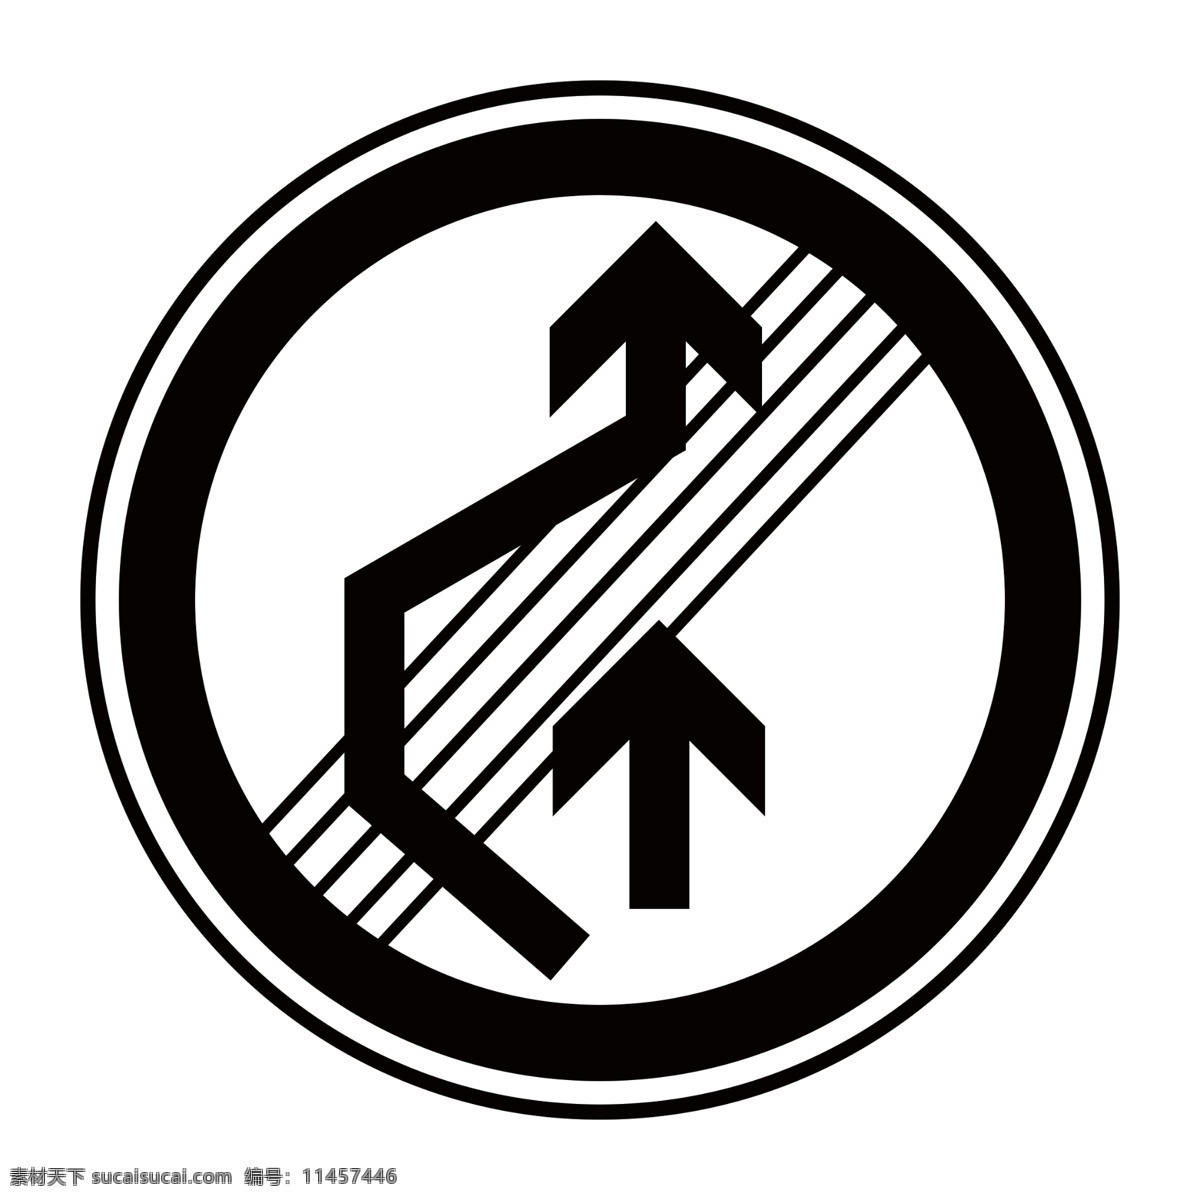 解除禁止超车 禁止标牌 禁止标识 警示牌 标志图标 禁令 标识 禁 标 禁止 标牌 标识牌 分层